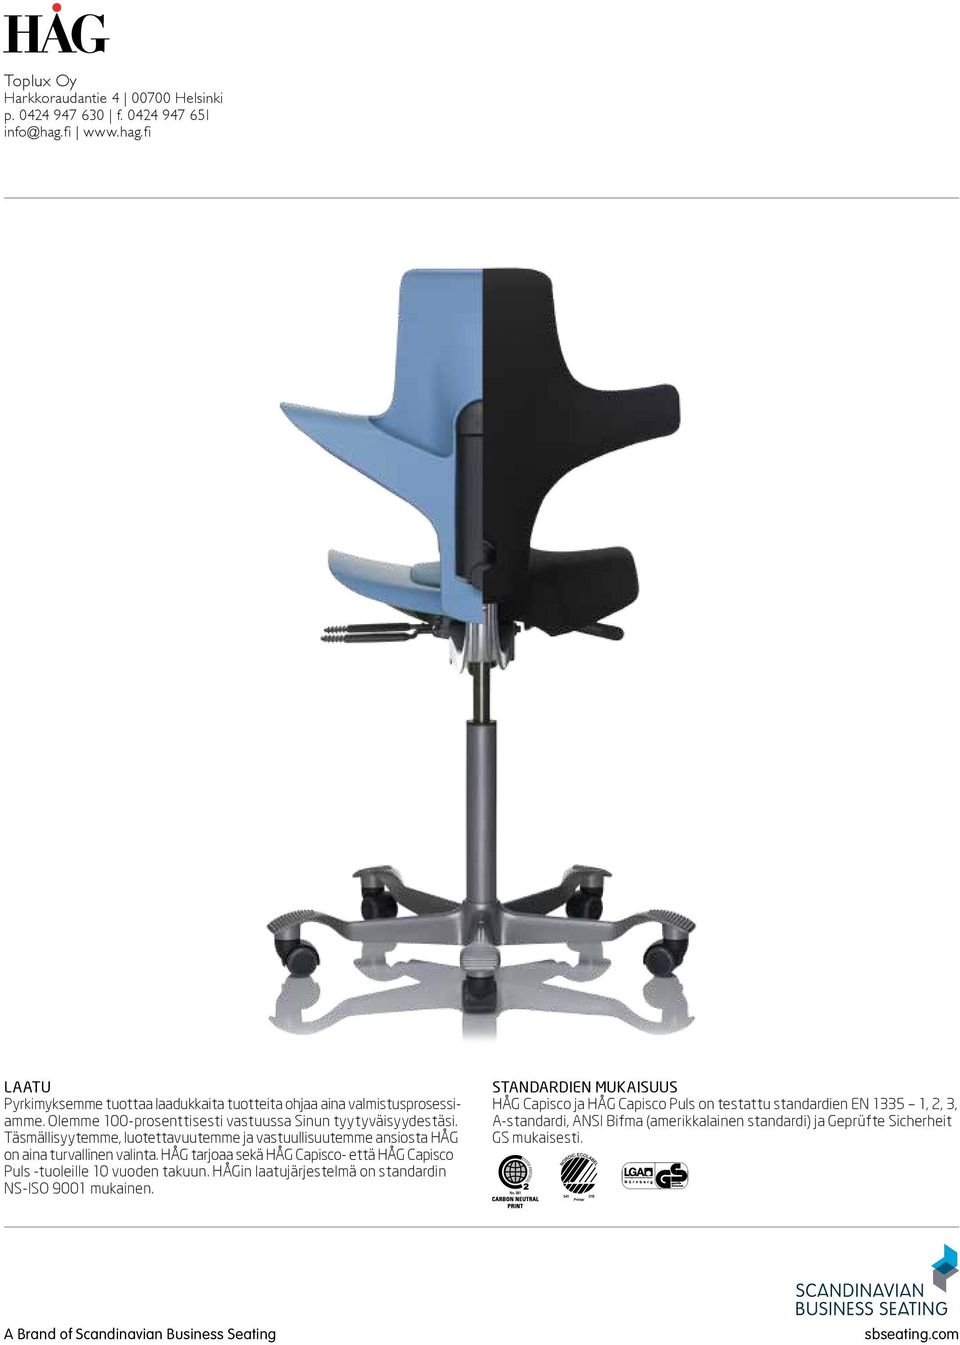 HÅG tarjoaa sekä HÅG Capisco- että HÅG Capisco Puls -tuoleille 10 vuoden takuun. HÅGin laatujärjestelmä on standardin NS-ISO 9001 mukainen.